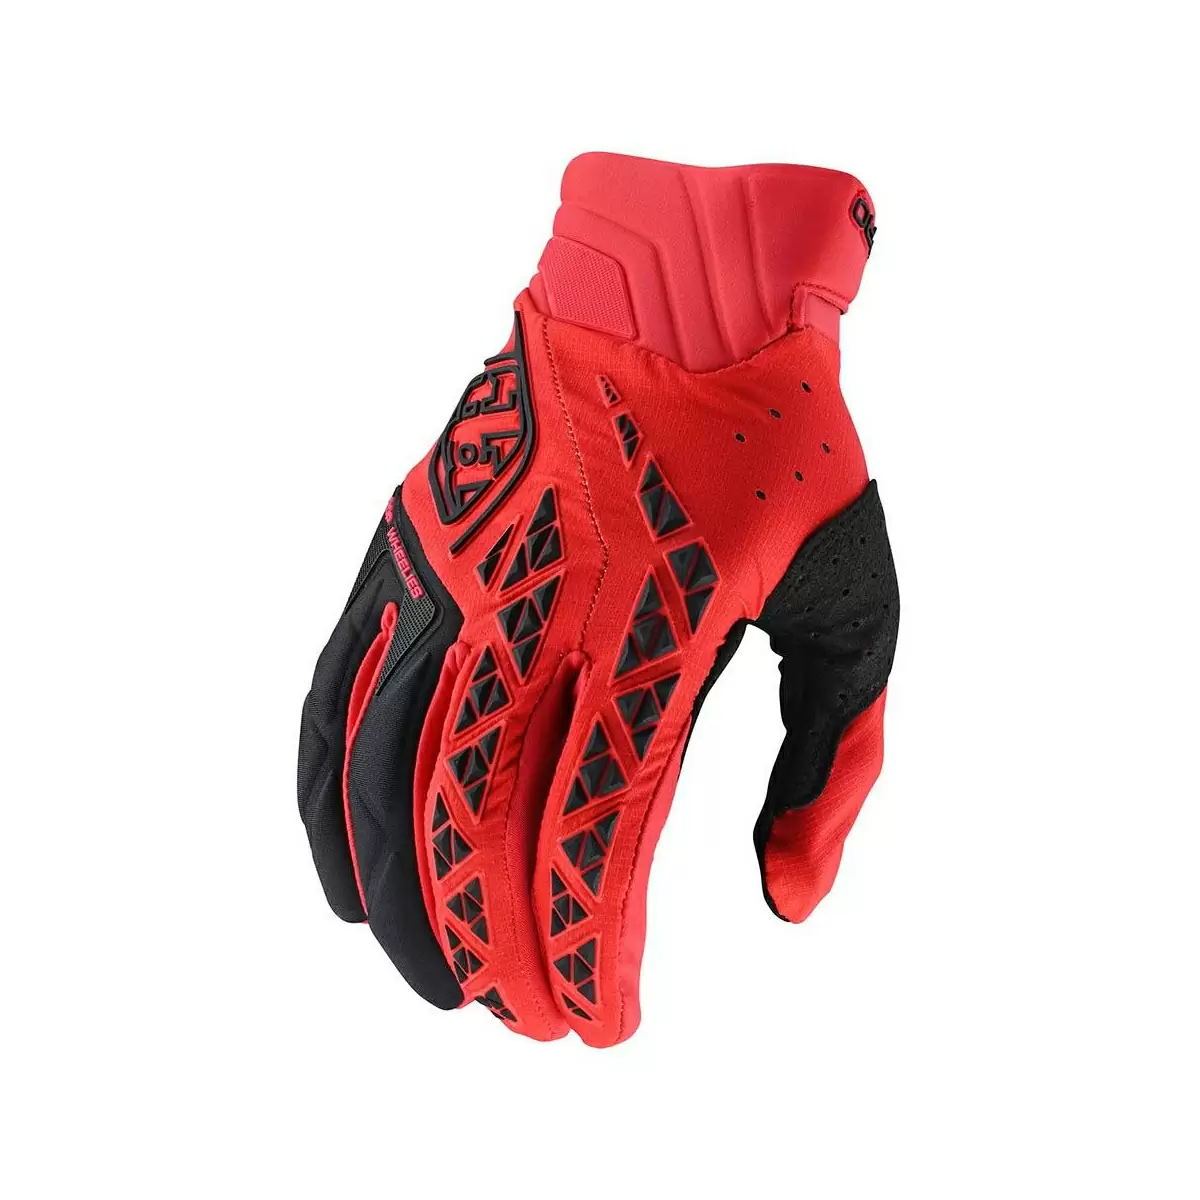 Gloves SE Pro Black/Red Size XXL - image